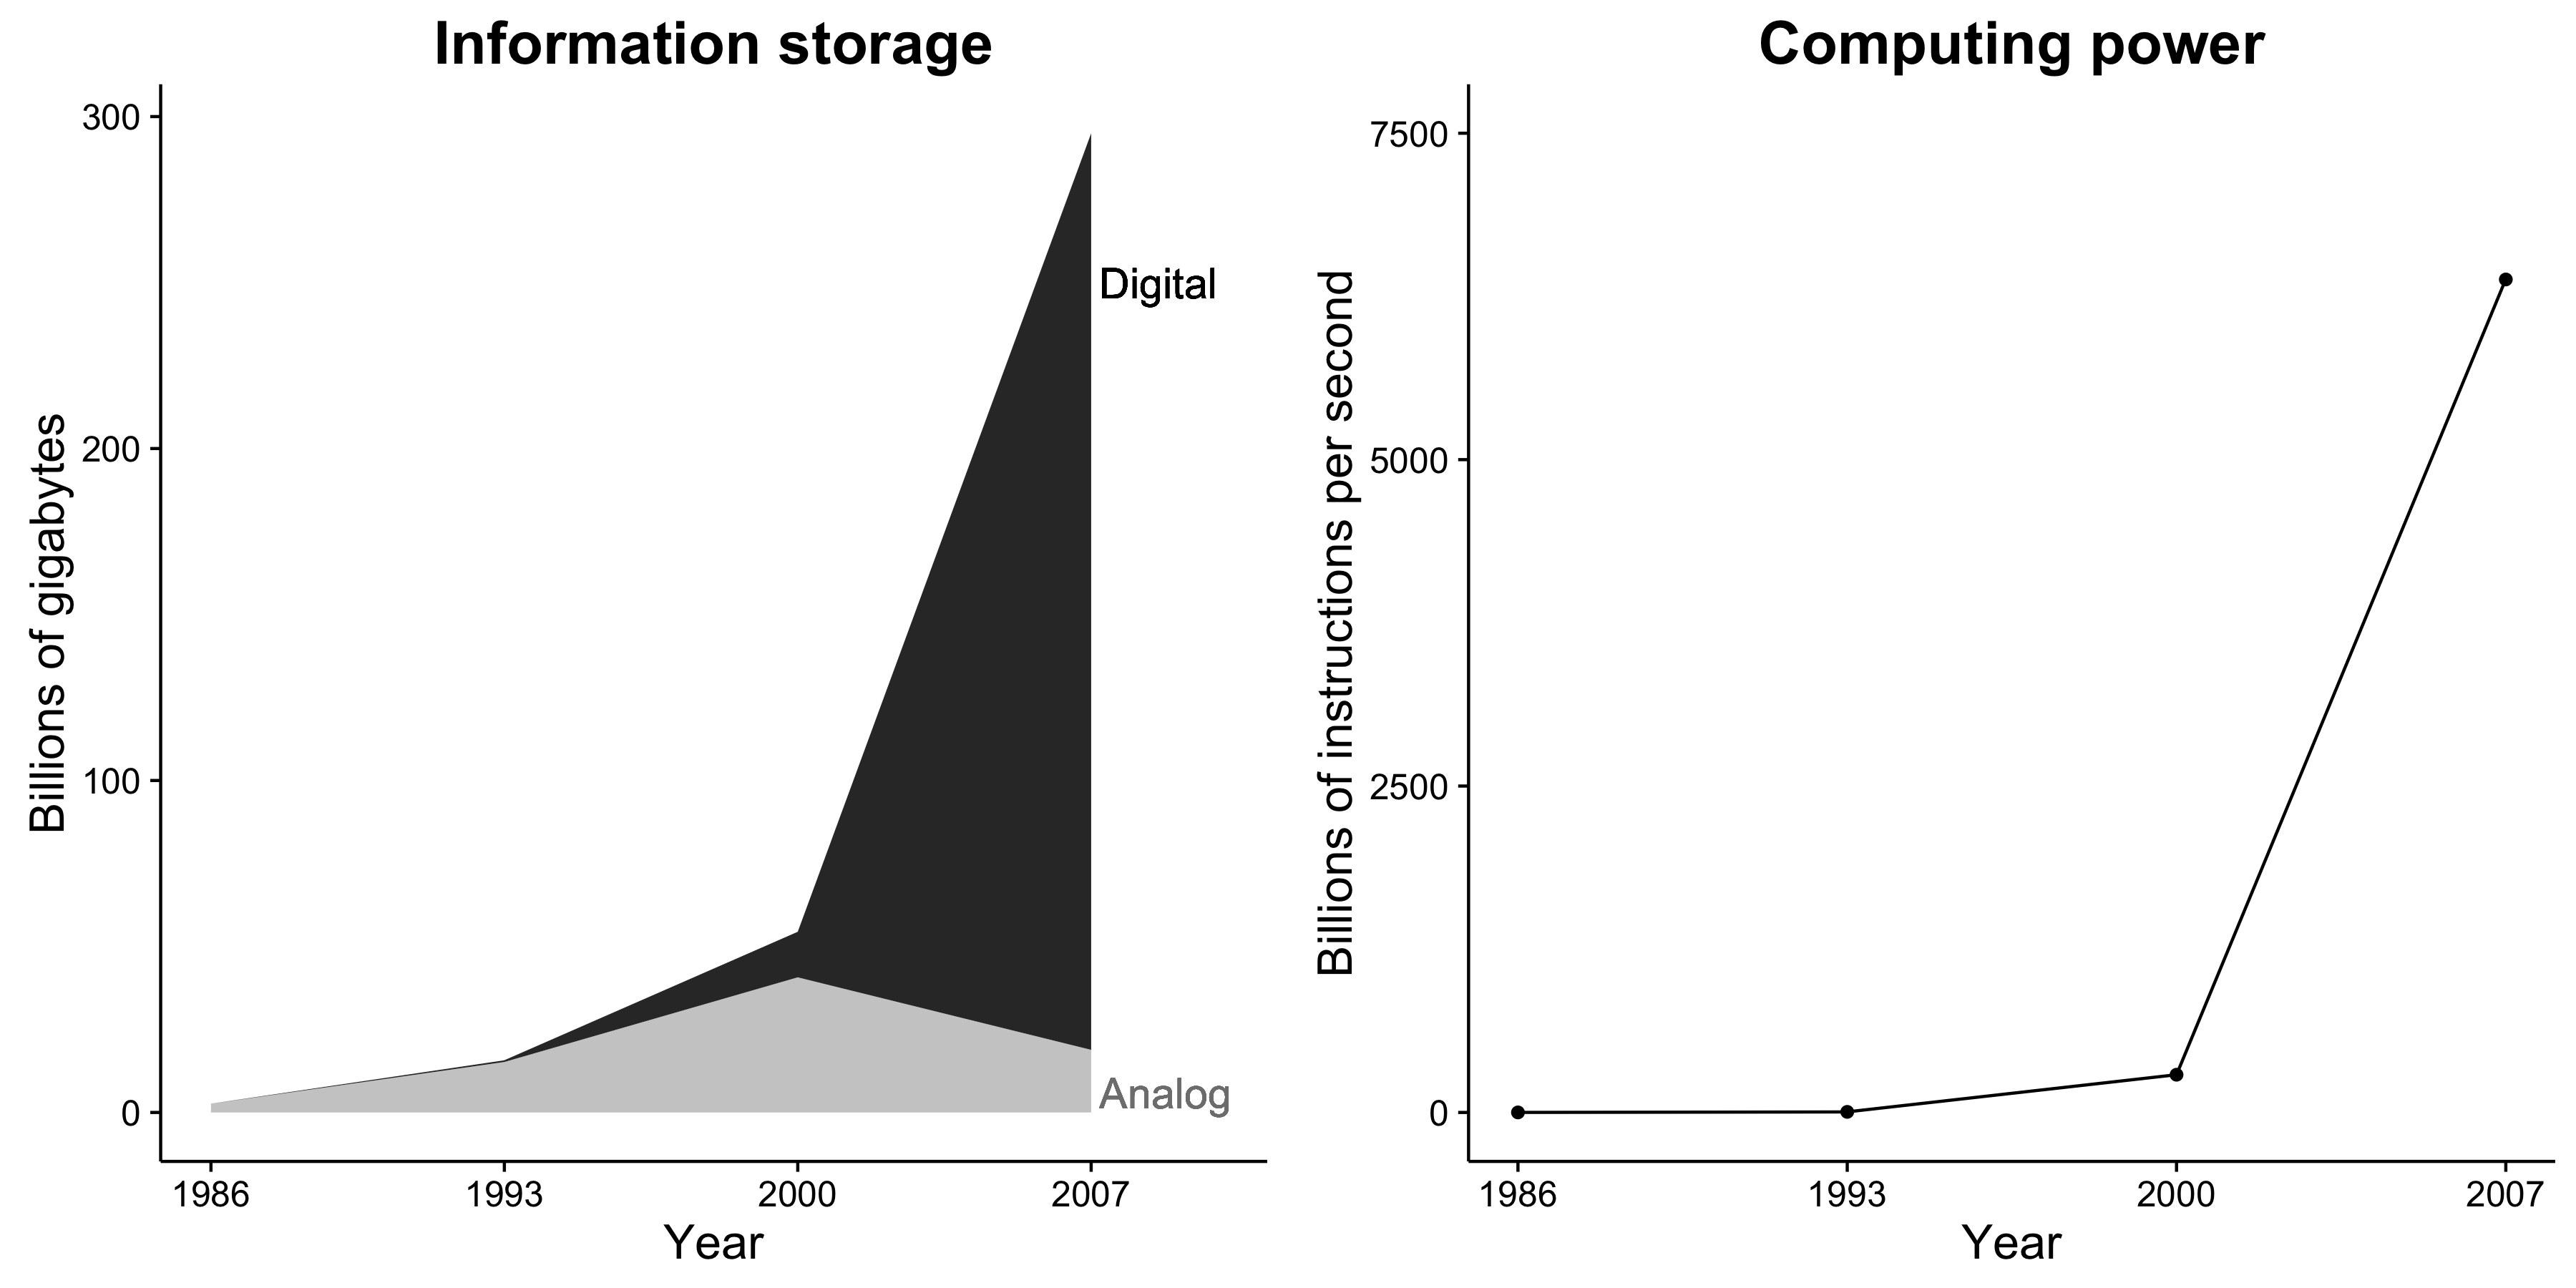 Figur 1.1: Informasjonslagringskapasitet og datakraft øker dramatisk. Videre er informasjonslagring nå nesten utelukkende digital. Disse endringene skaper utrolige muligheter for sosiale forskere. Tilpasset fra Hilbert og López (2011), figur 2 og 5.